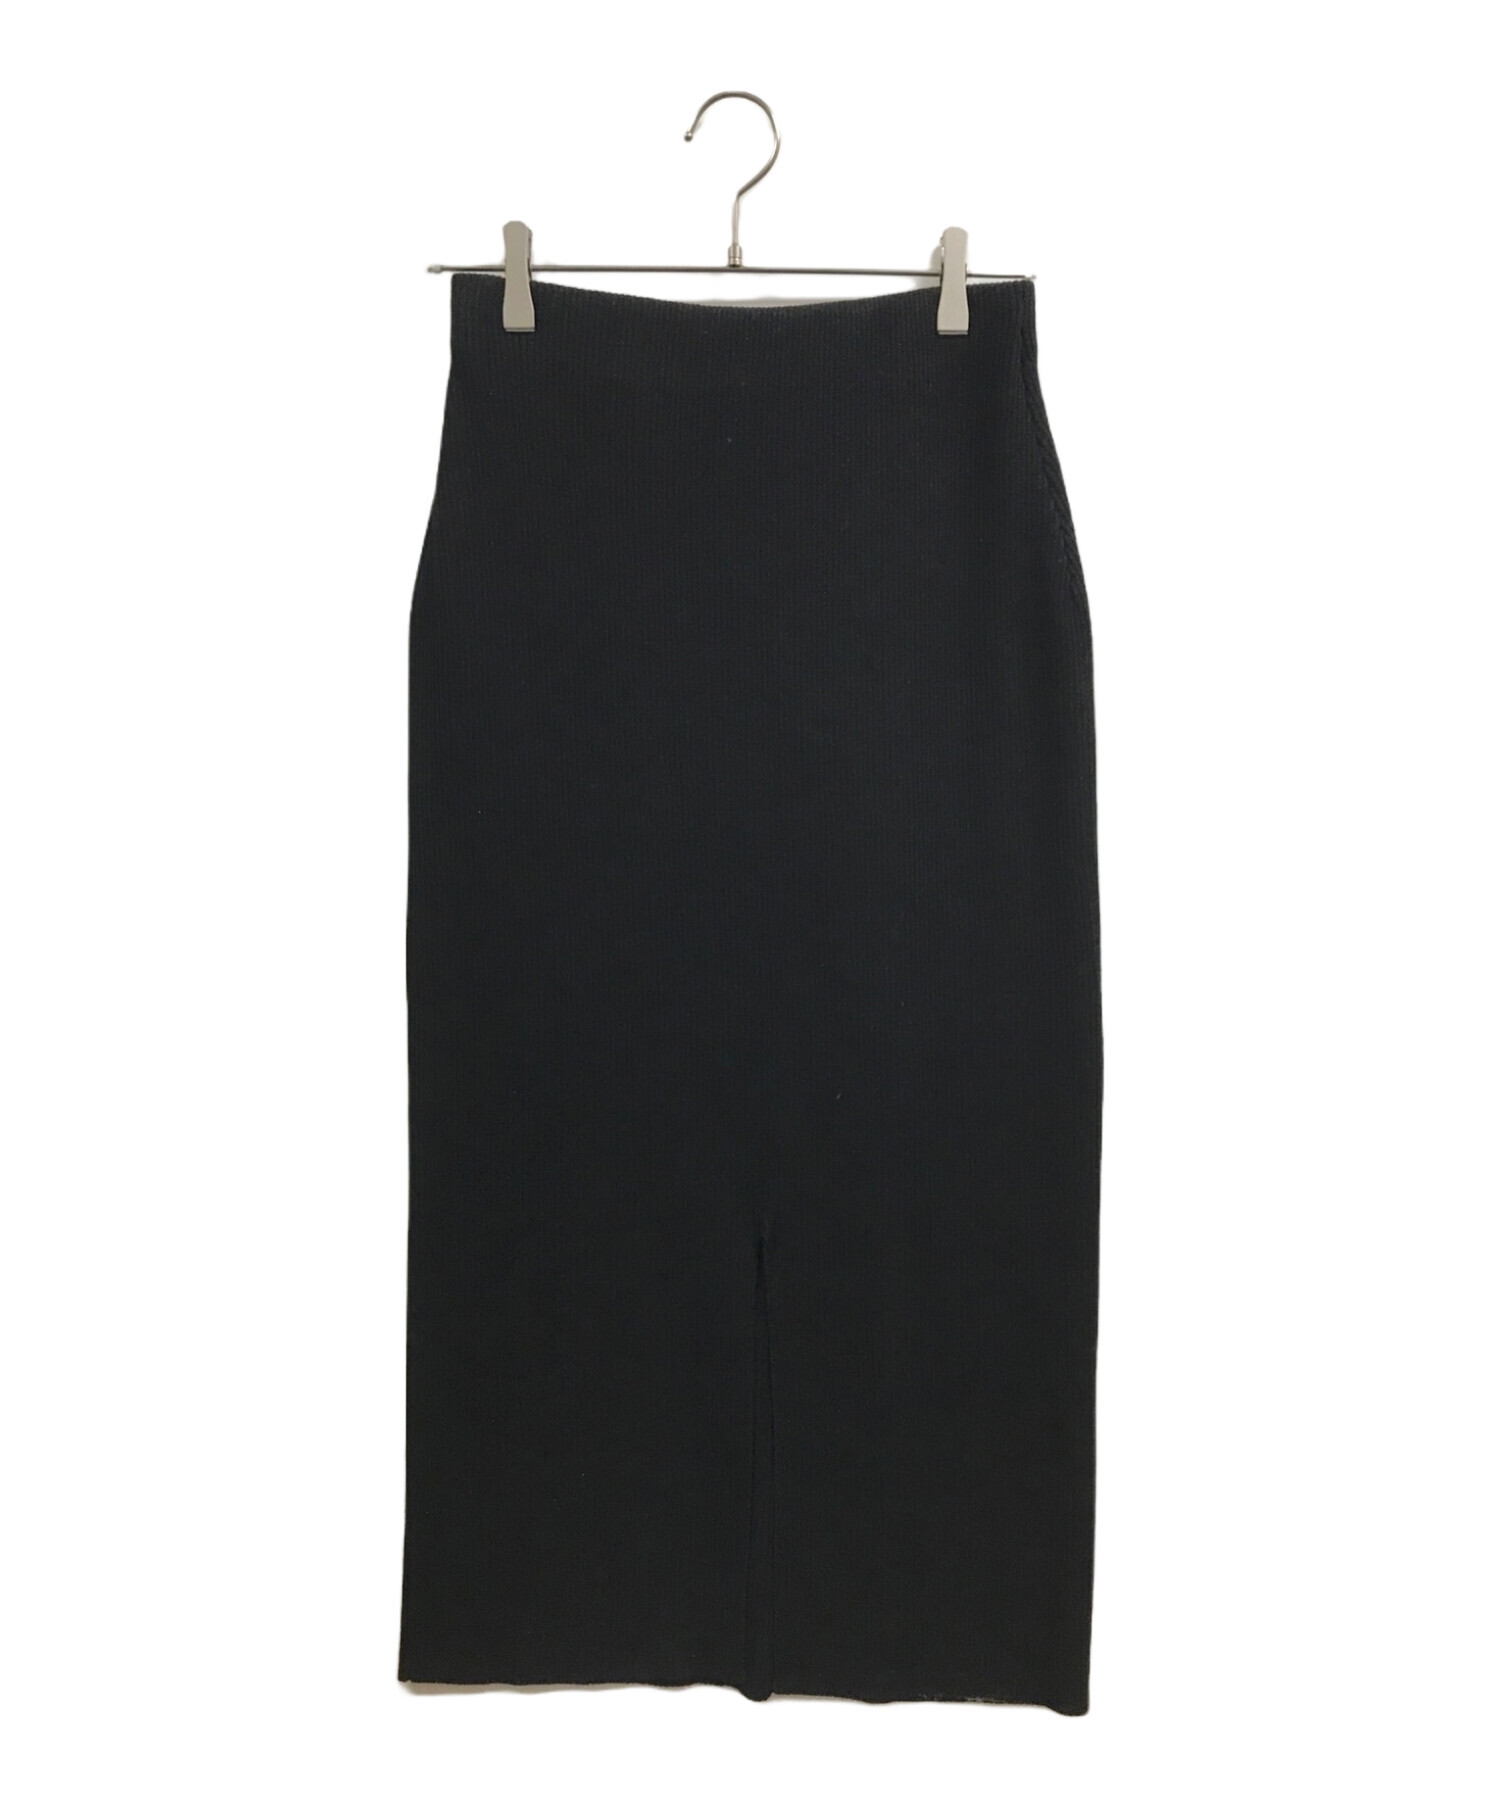 Spick and Span (スピックアンドスパン) ラメリブニットタイトスカート ブラック サイズ:38 未使用品